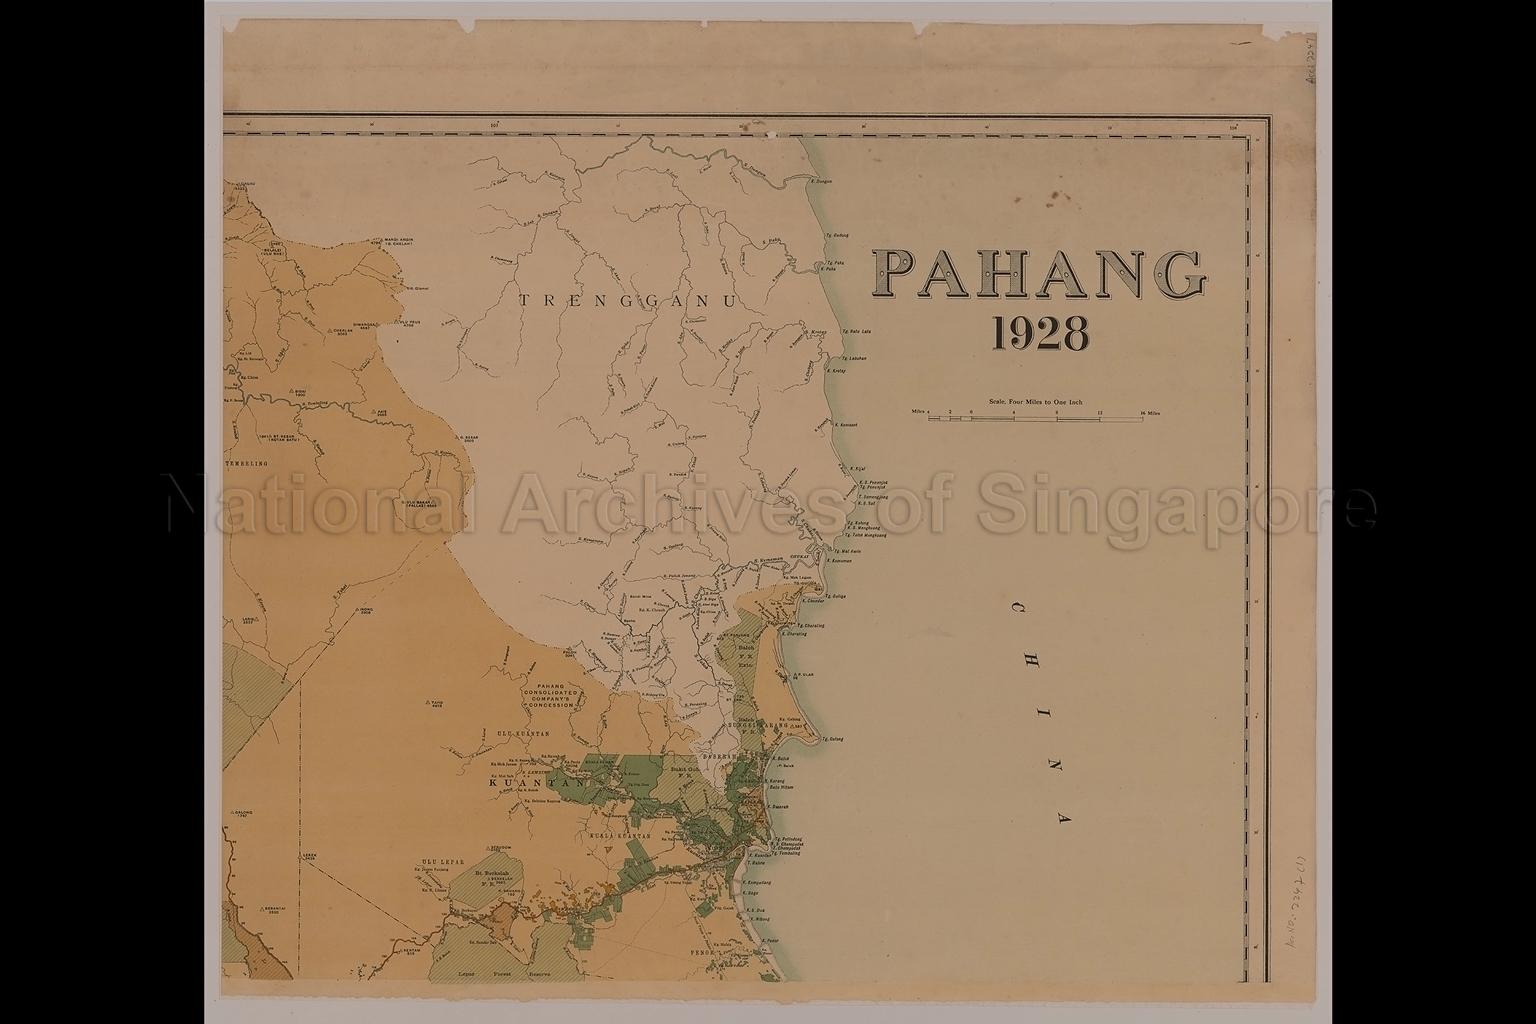 Pahang,1928